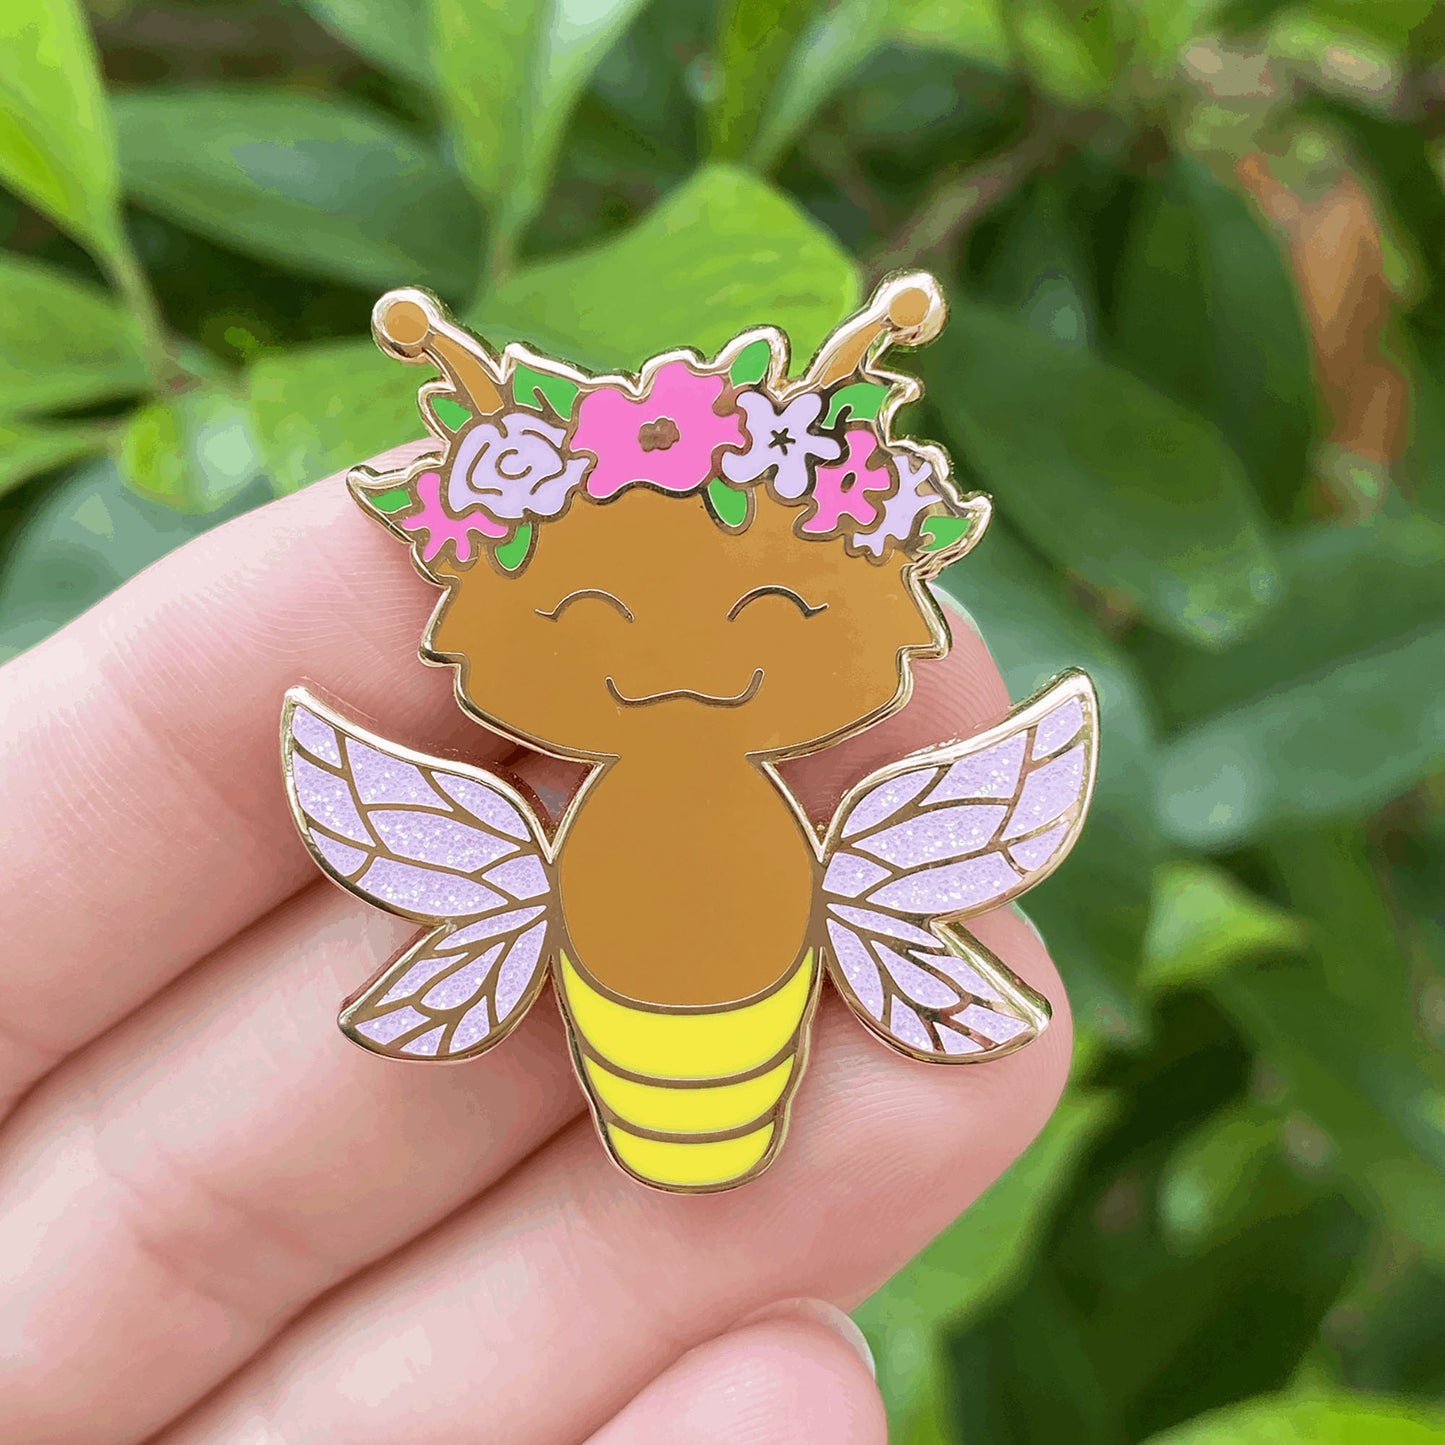 Firefly Fairy enamel pin